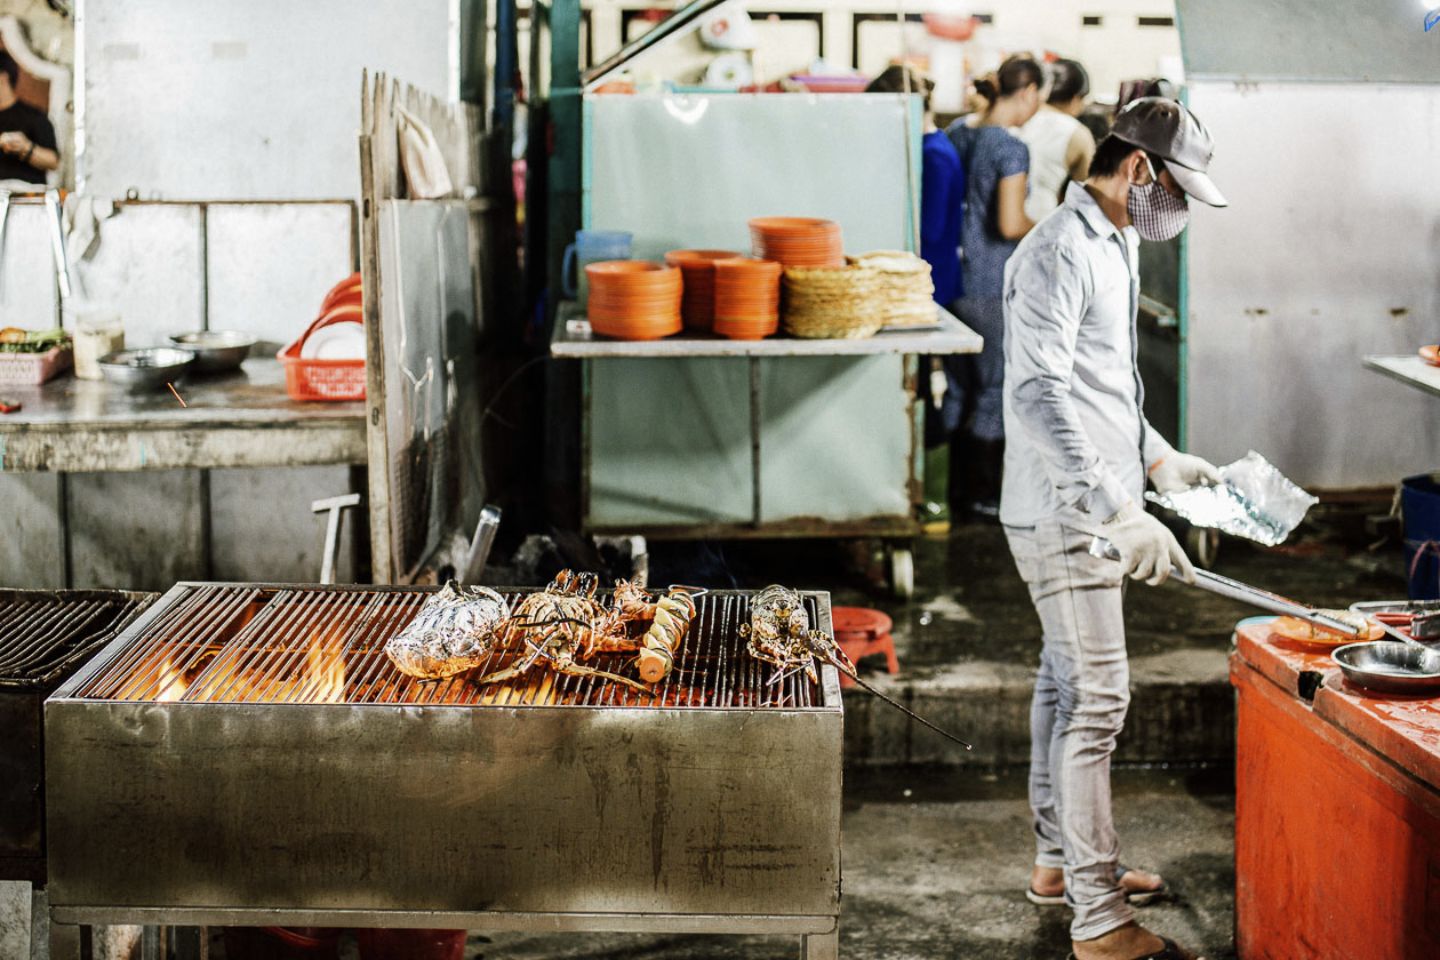 Chợ đêm Phú Quốc (chợ đêm Bạch Đằng) – Thế giới ẩm thực nhộn nhịp khi đêm về 11